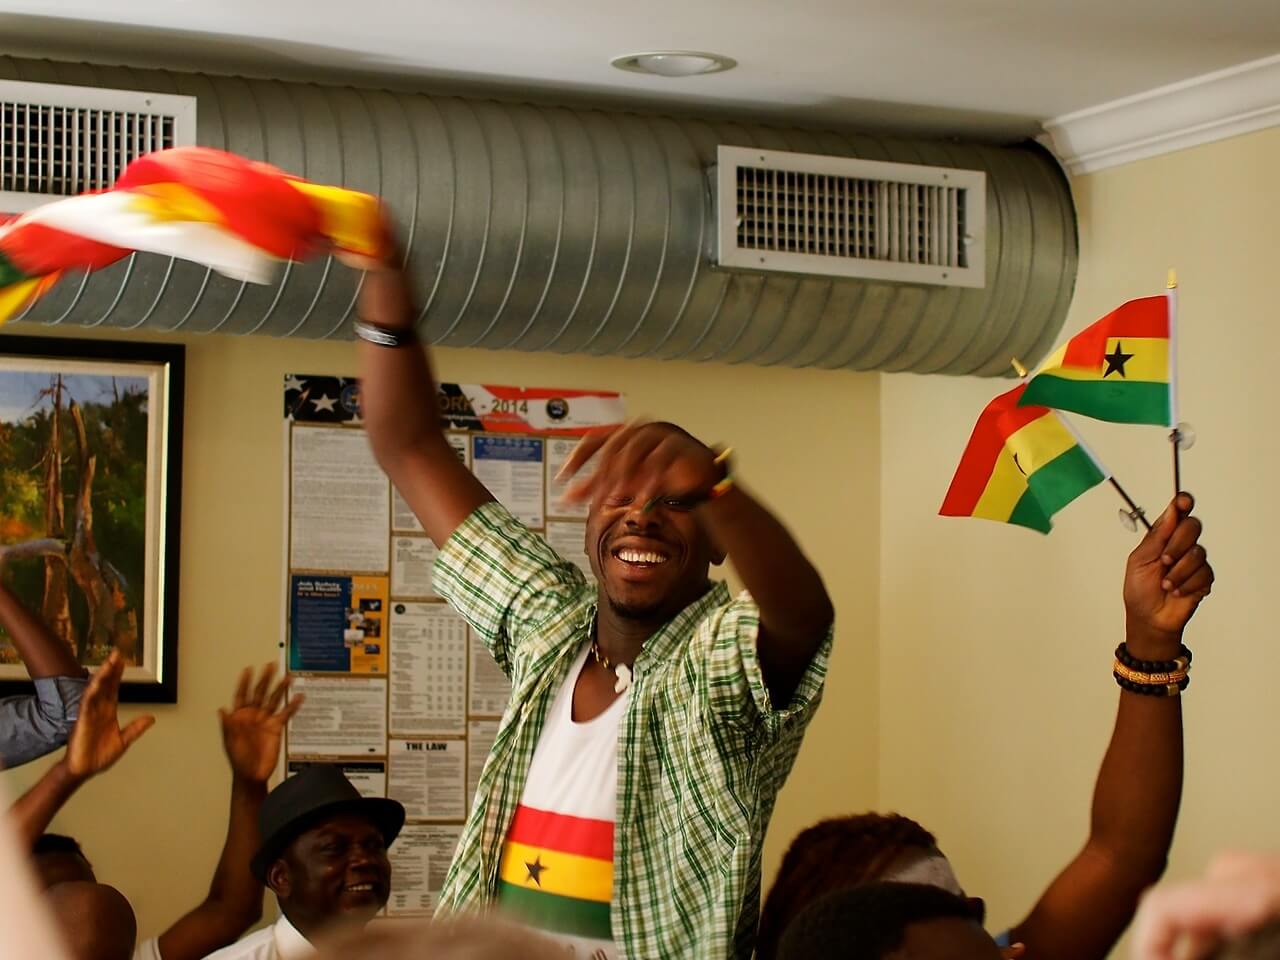 Ghana vs. Germany, Papaye Restaurant, The Bronx